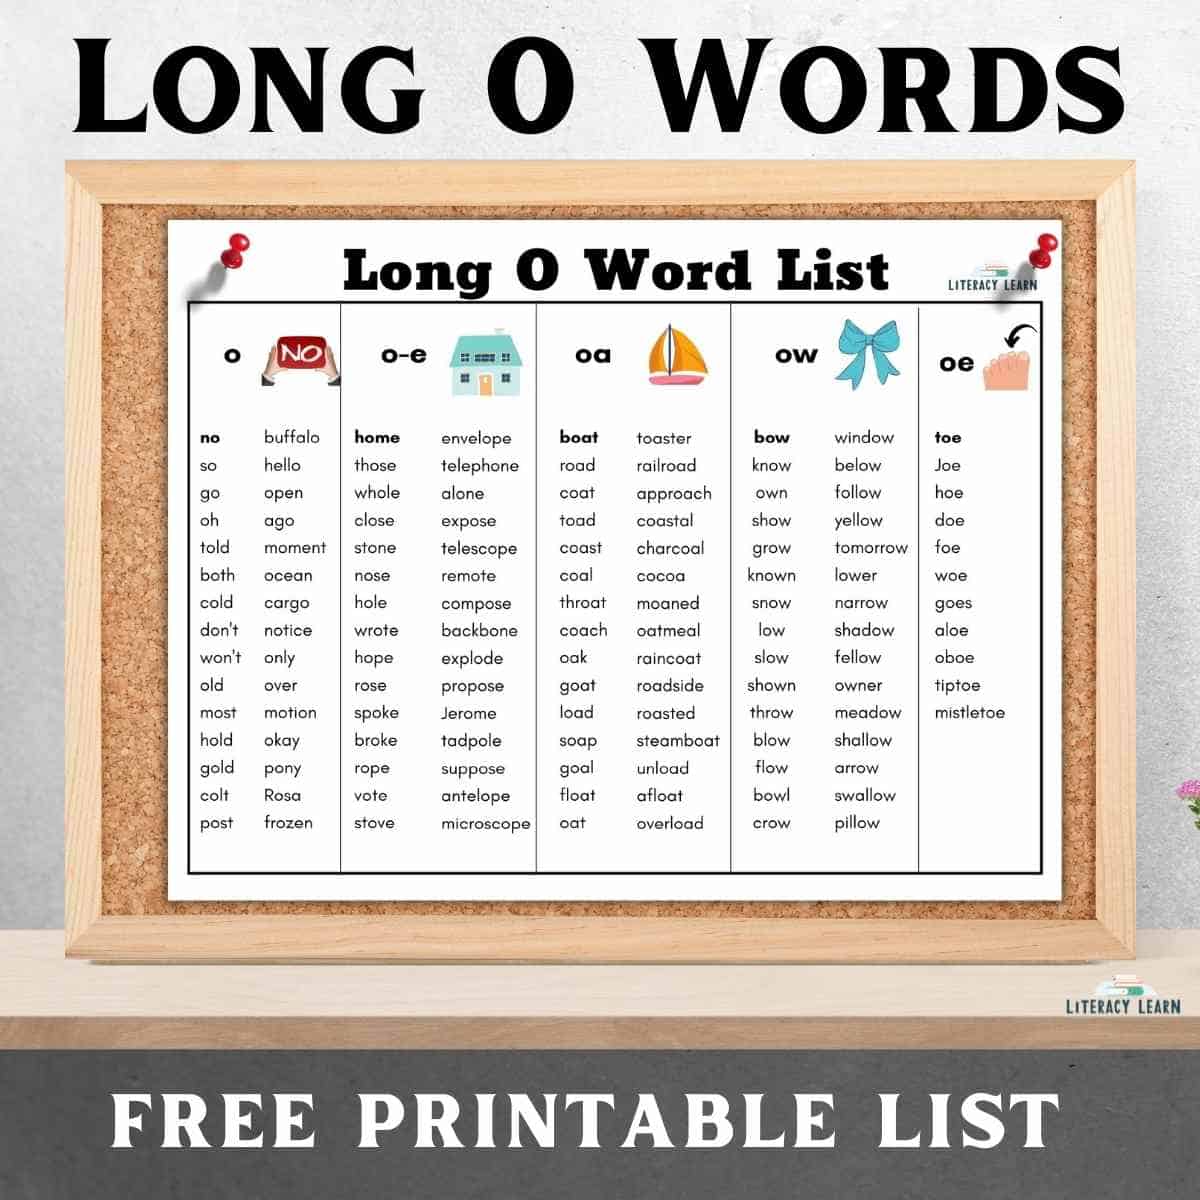 Long O Words List 